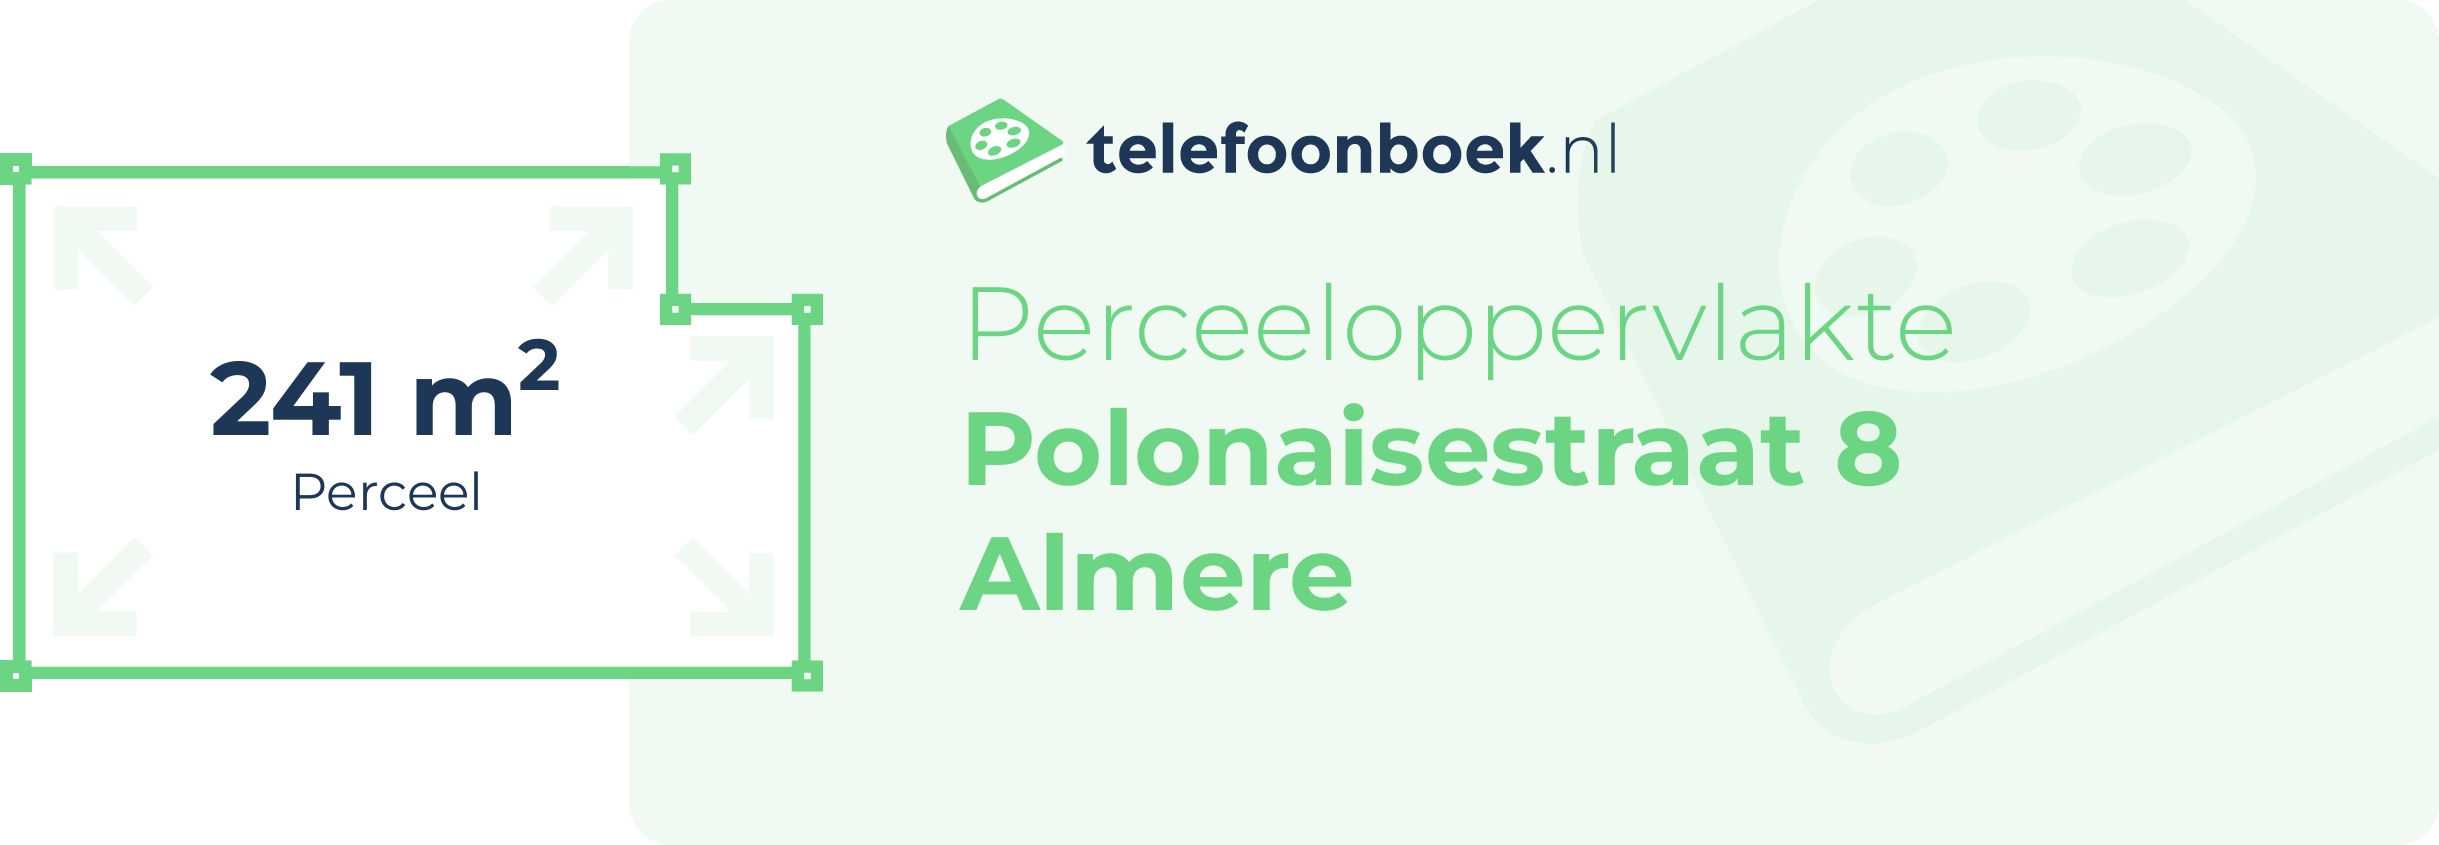 Perceeloppervlakte Polonaisestraat 8 Almere